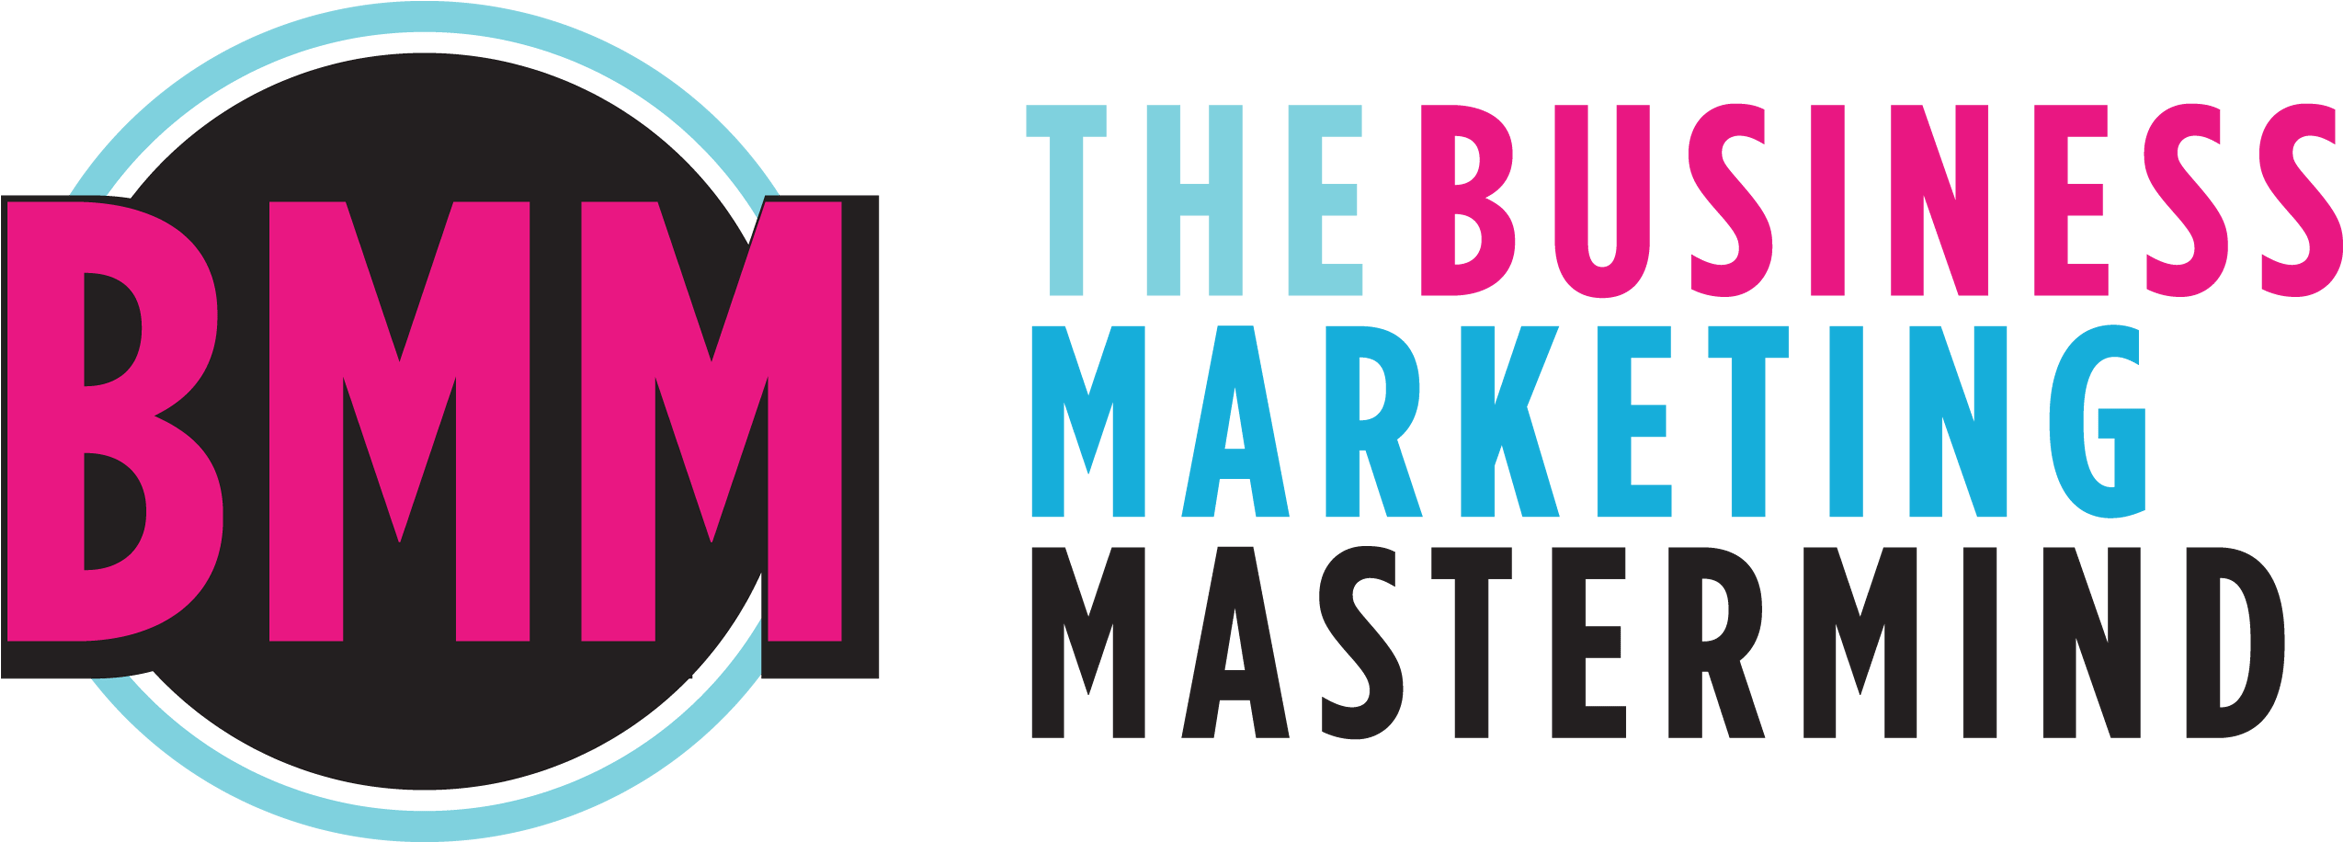 Business Marketing Mastermind Logo